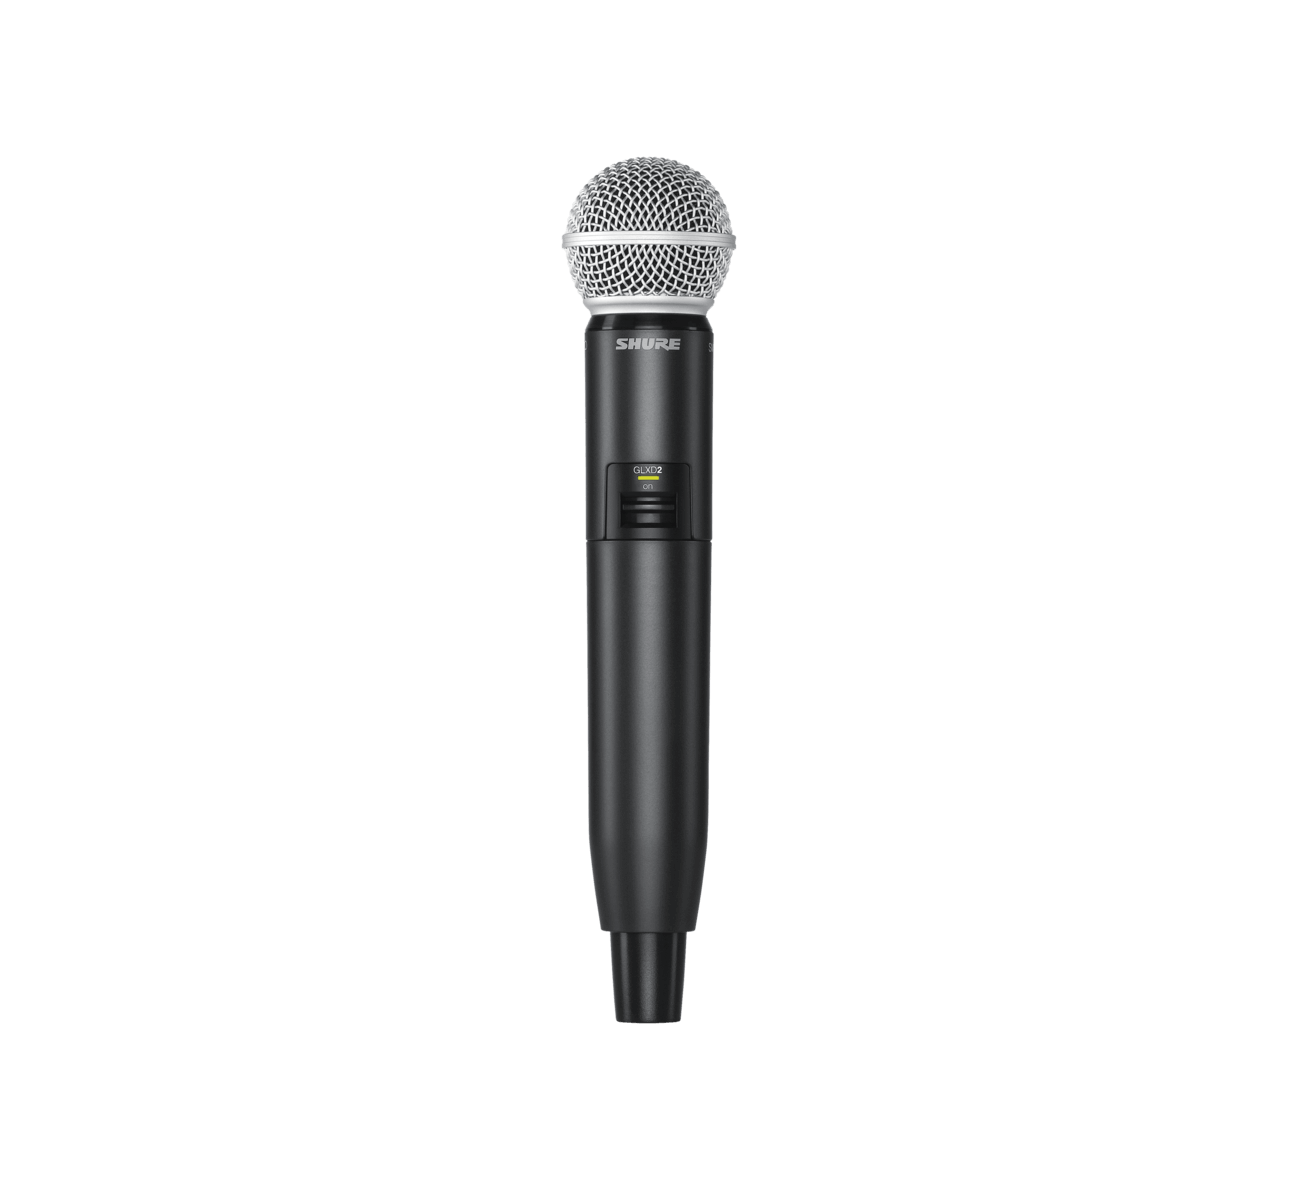 Shure general Shure glxd24/sm58 sistema inalámbrico digital para voz, con micrófono vocal sm58